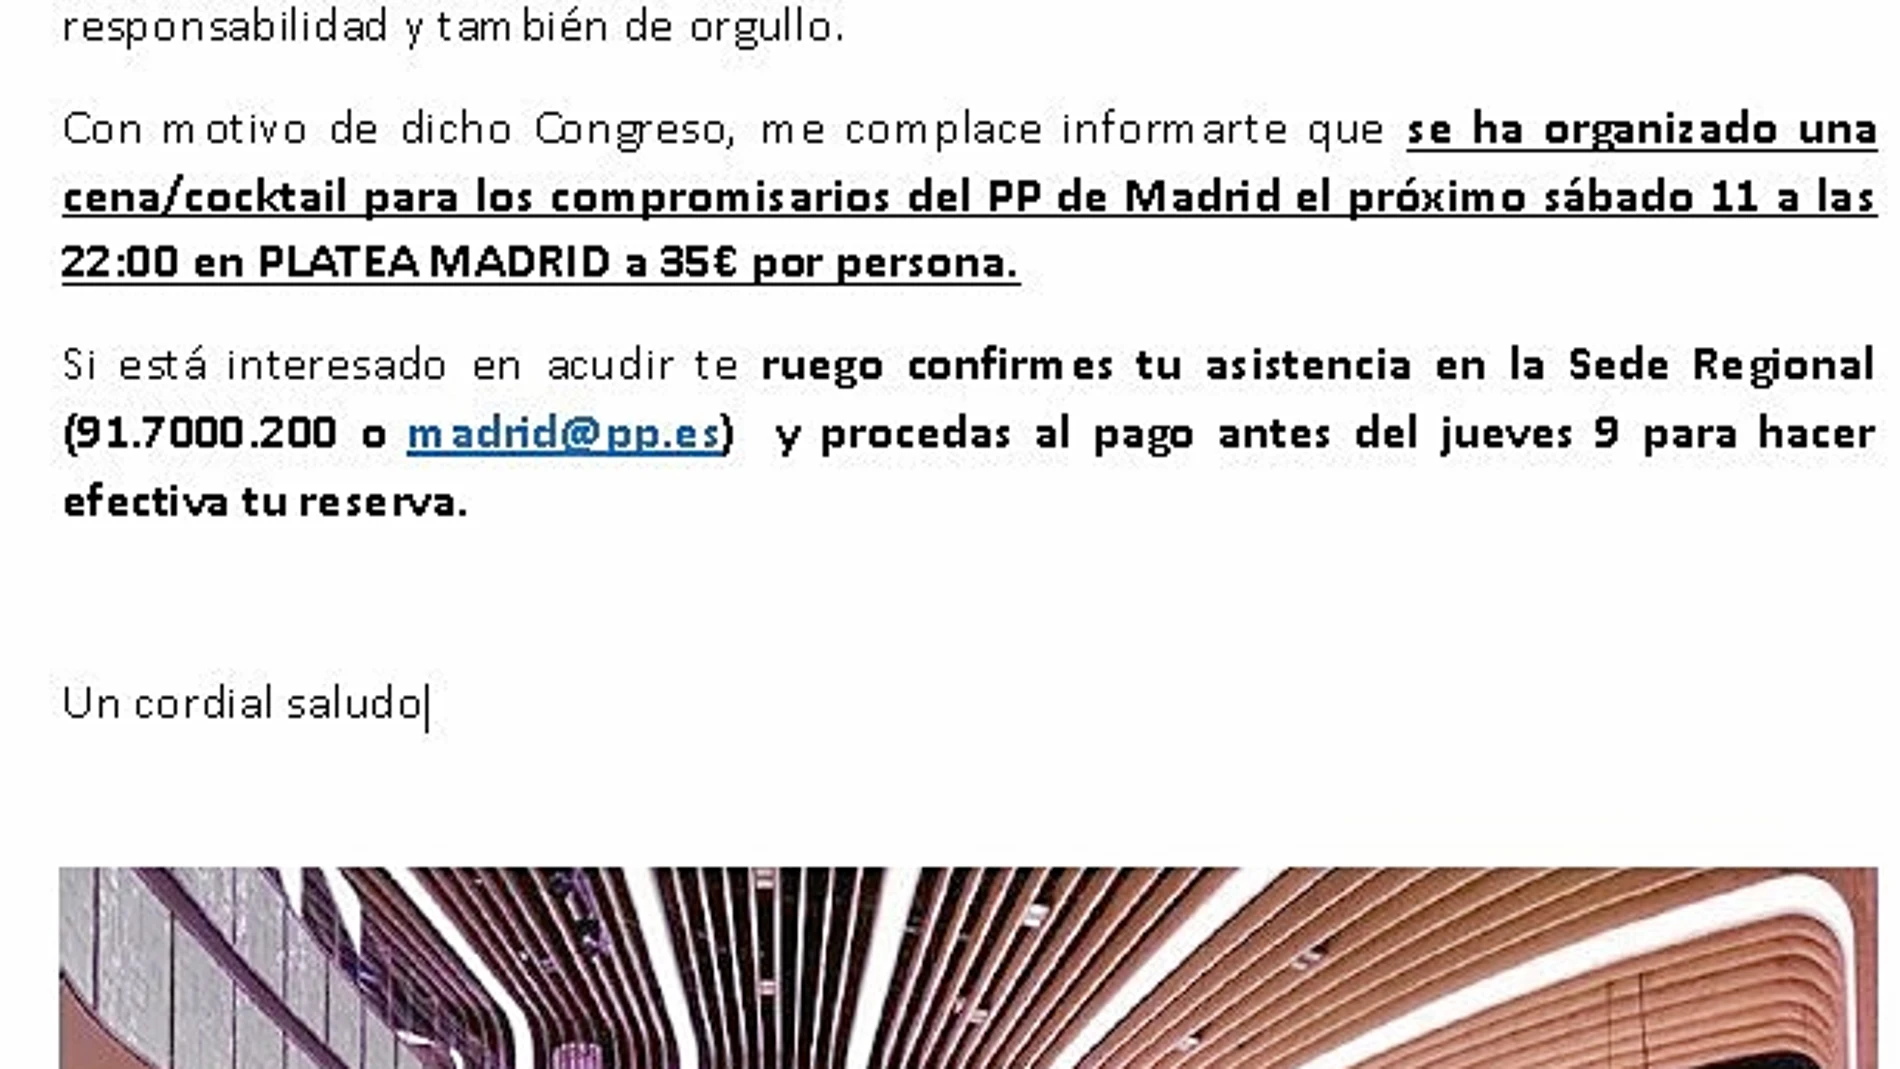 Carta dirigida a los 200 compromisarios regionales para que participen en una cena organizada por el PP de Madrid